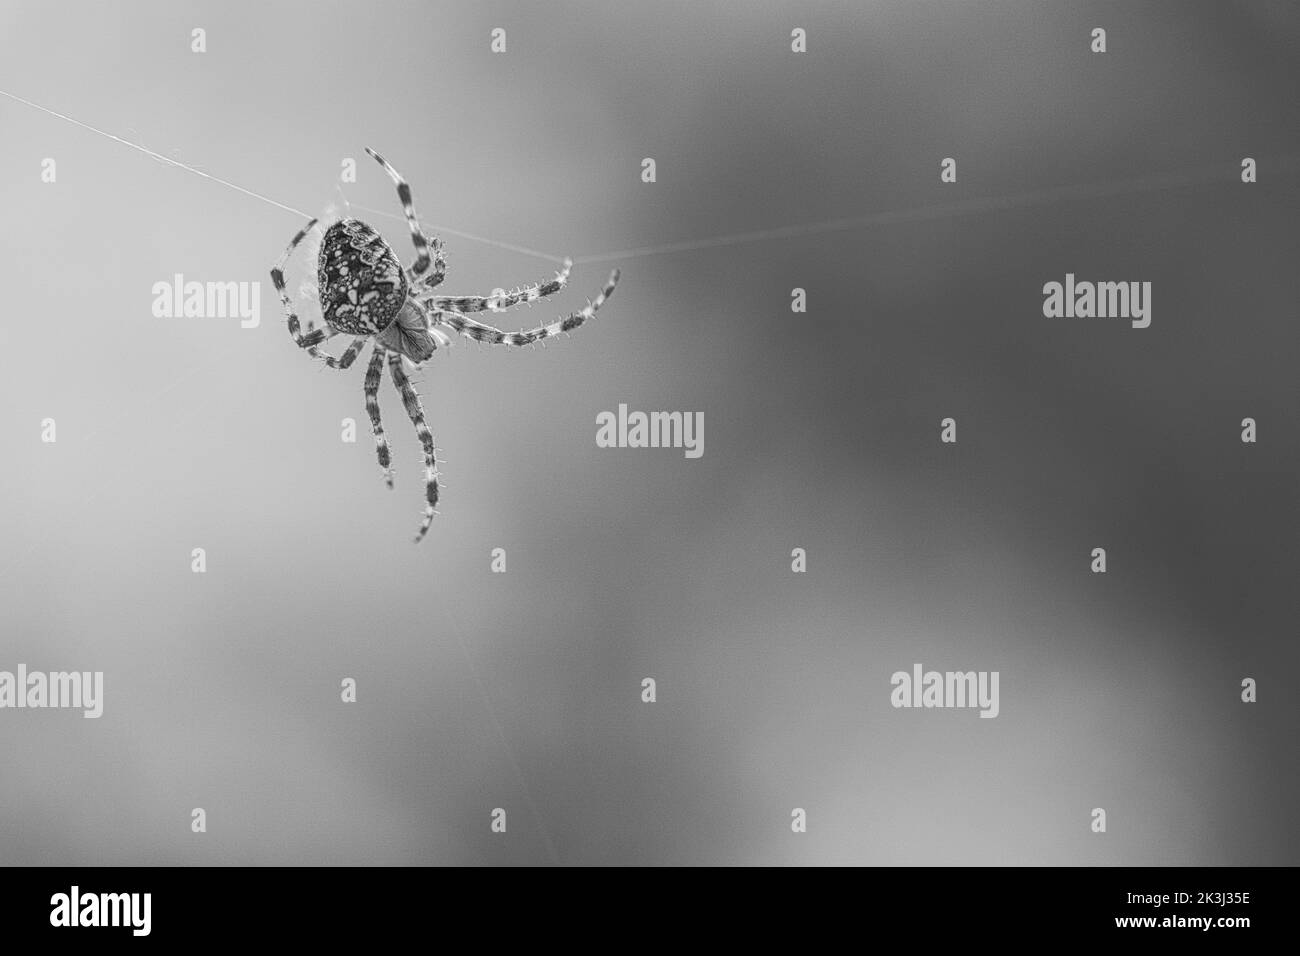 Kreuzspinne in schwarz-weiß geschossen, kriechend auf einem Spinnfaden. Unscharfer Hintergrund. Ein nützlicher Jäger unter Insekten. Arachnid. Tierfoto aus dem Stockfoto